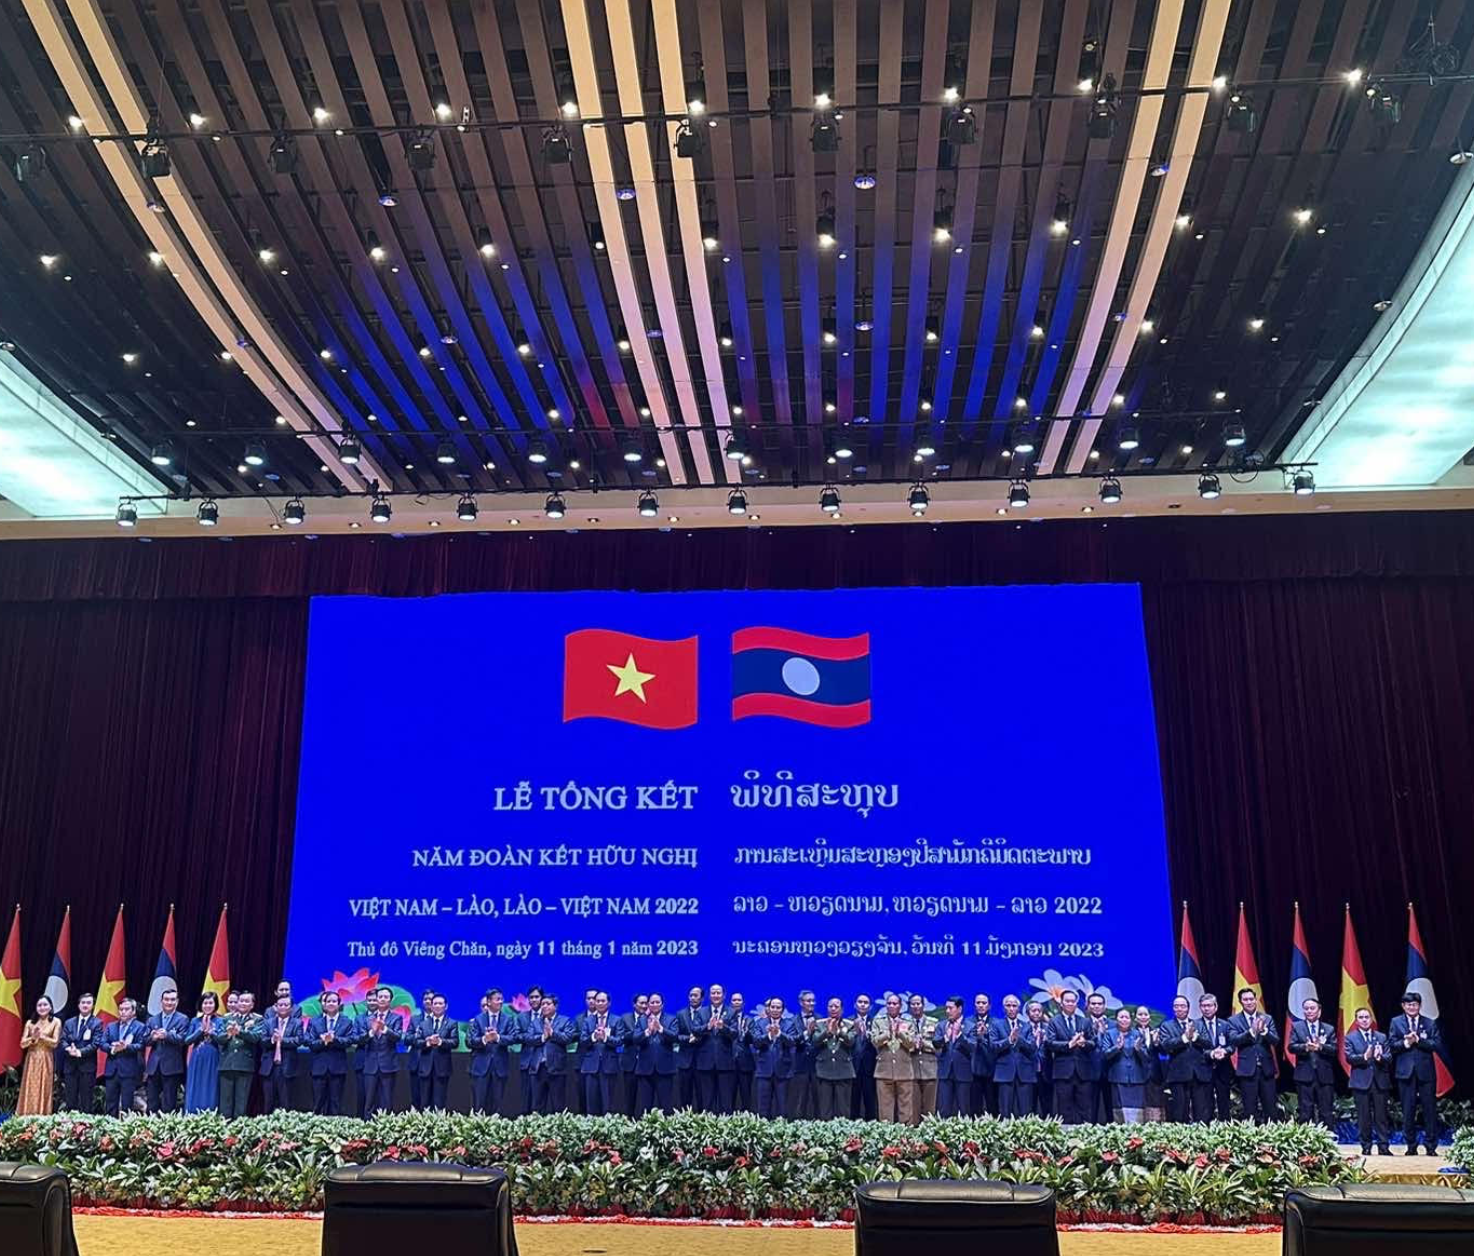 Thúc đẩy hợp tác văn hoá, thể thao và du lịch giữa Việt Nam và Lào đi vào chiều sâu và lên tầm cao mới